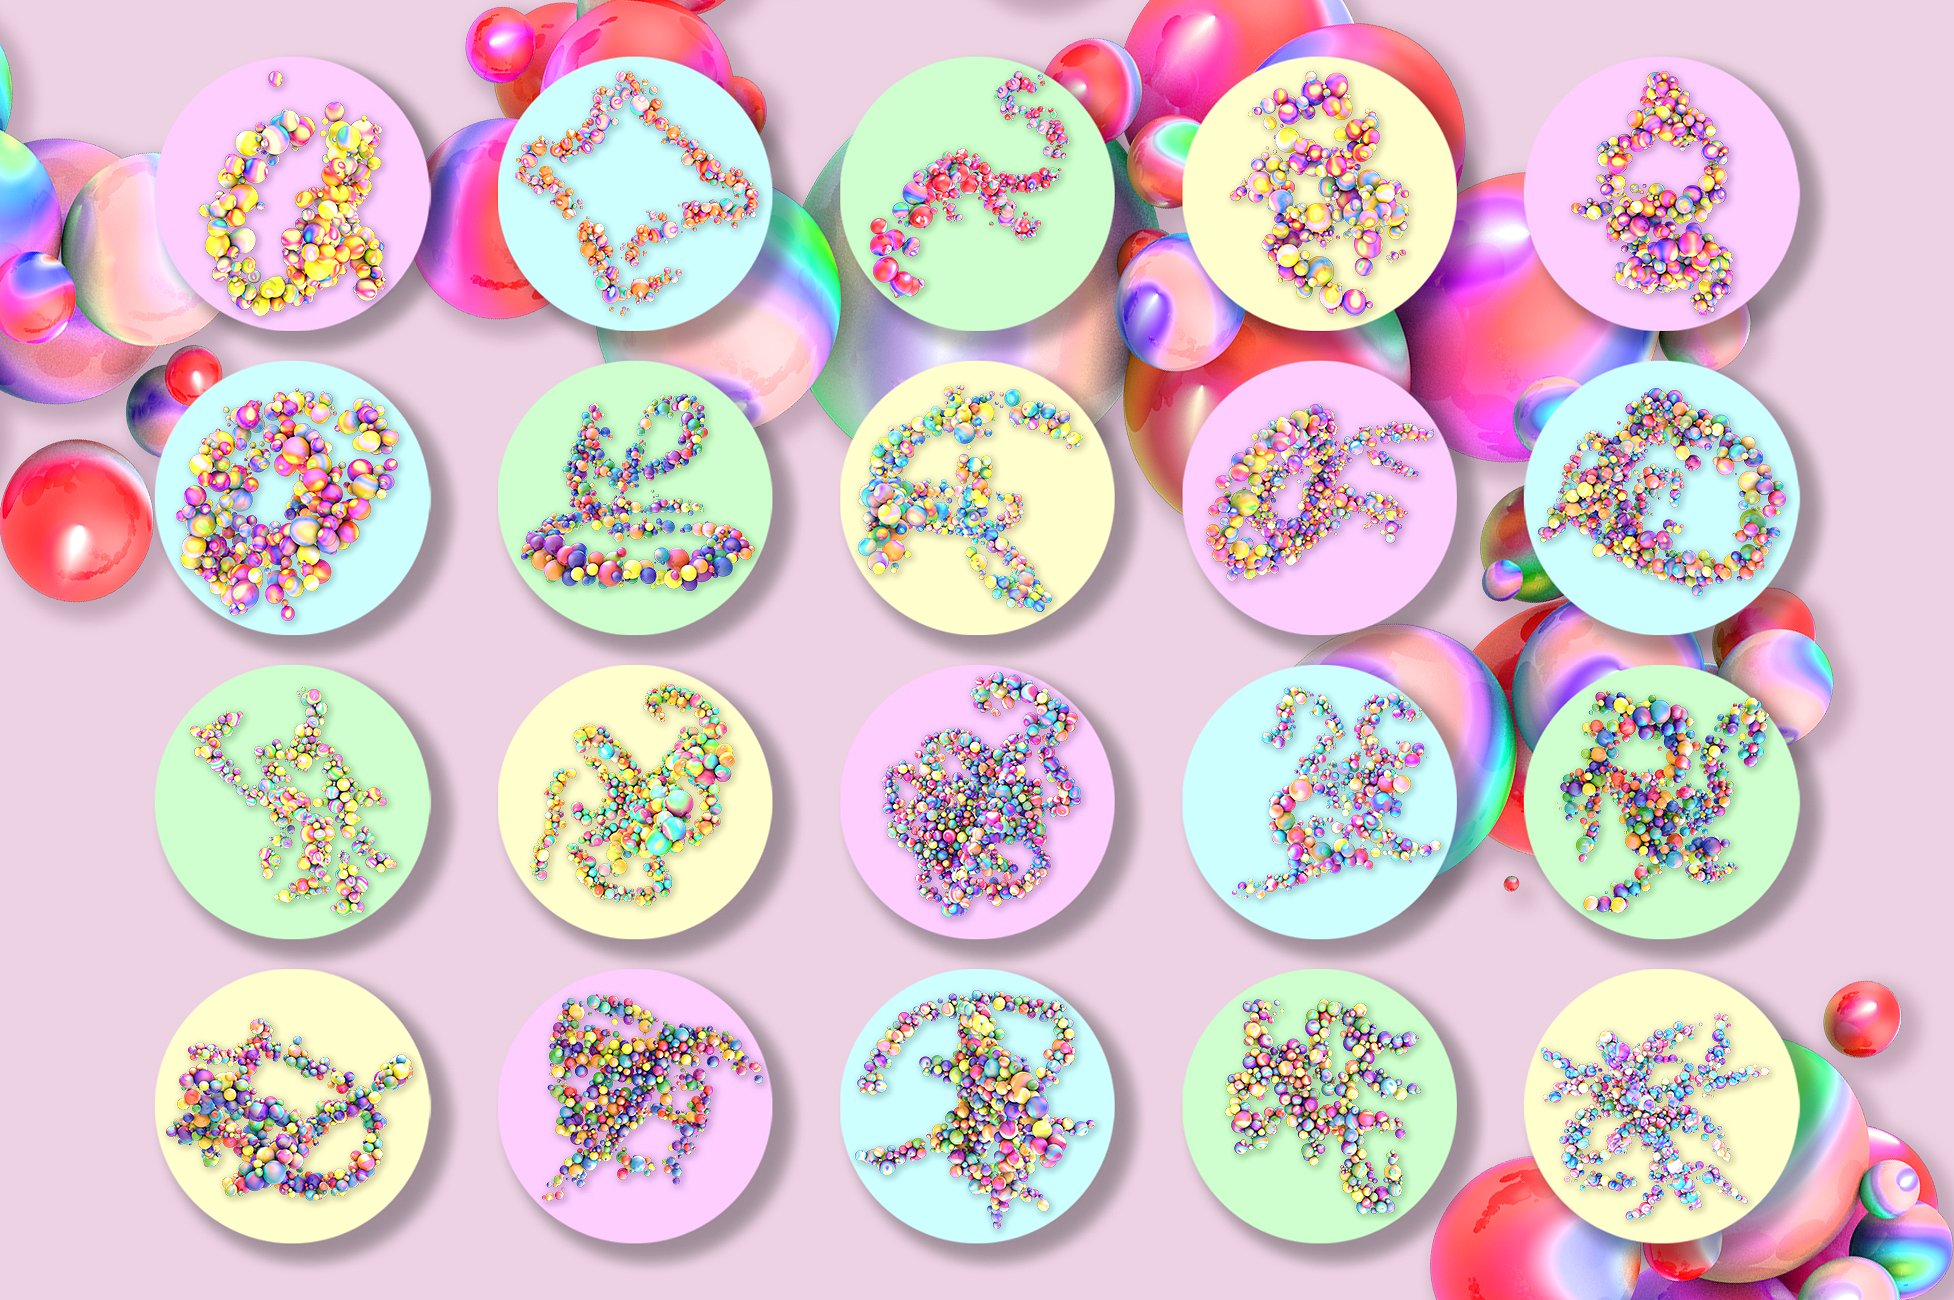 80款彩色球体叠层背景 Spheres插图(3)